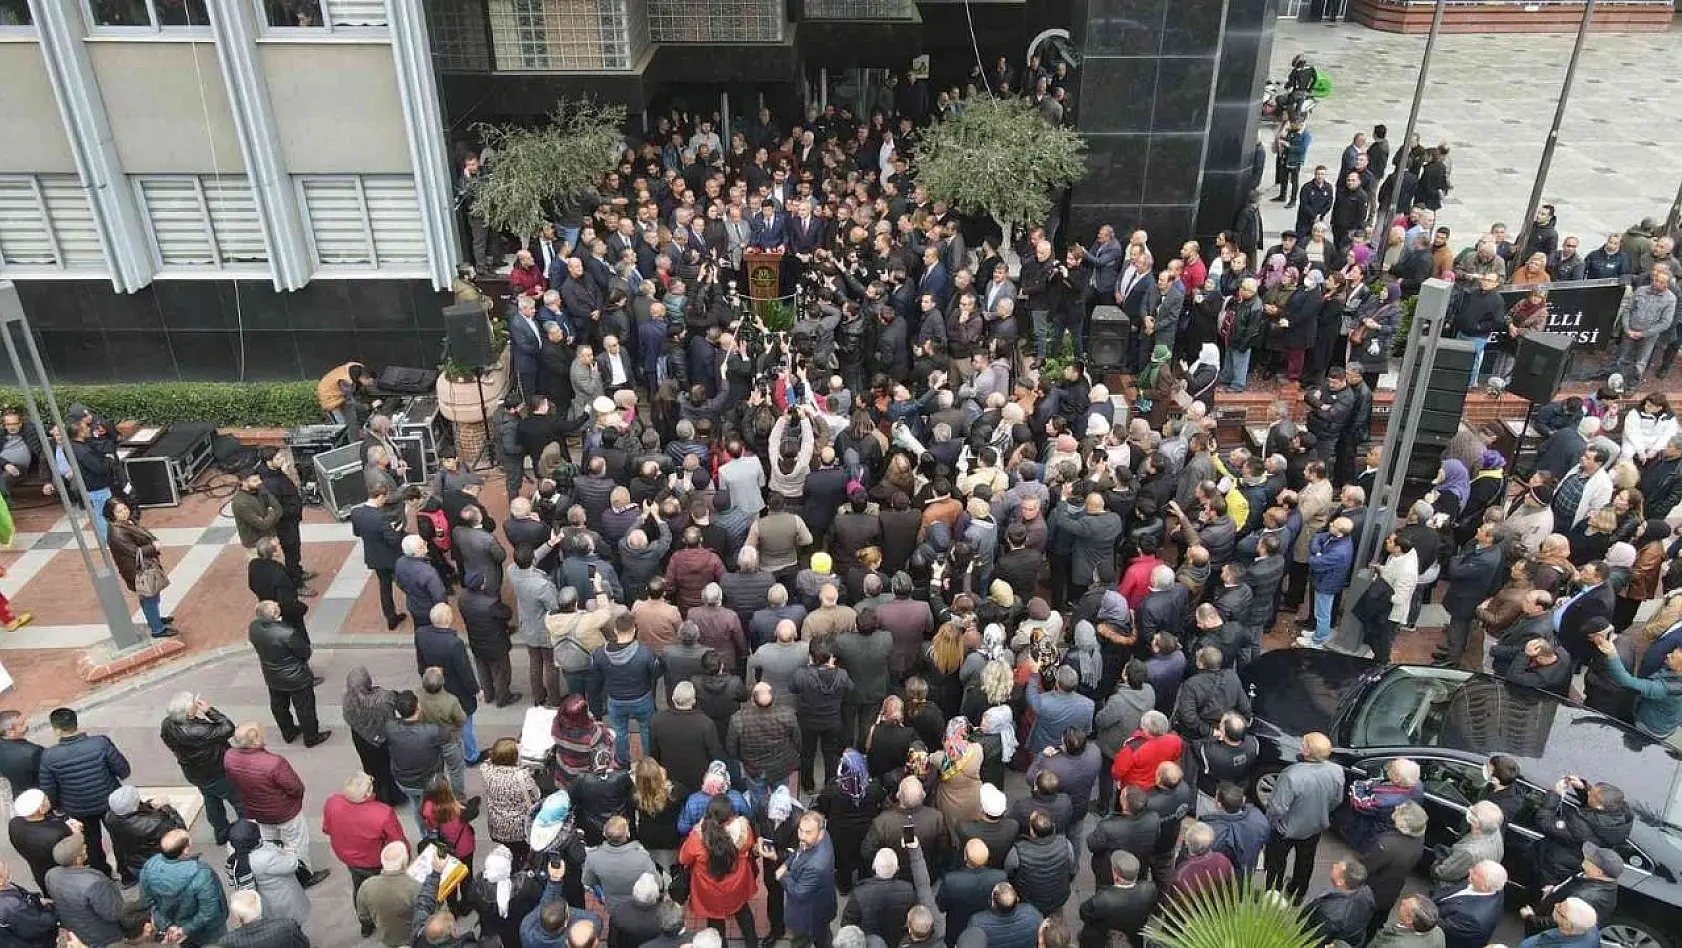 İYİ Parti'den AK Parti'ye geçen Başkan Özcan'a görkemli karşılama